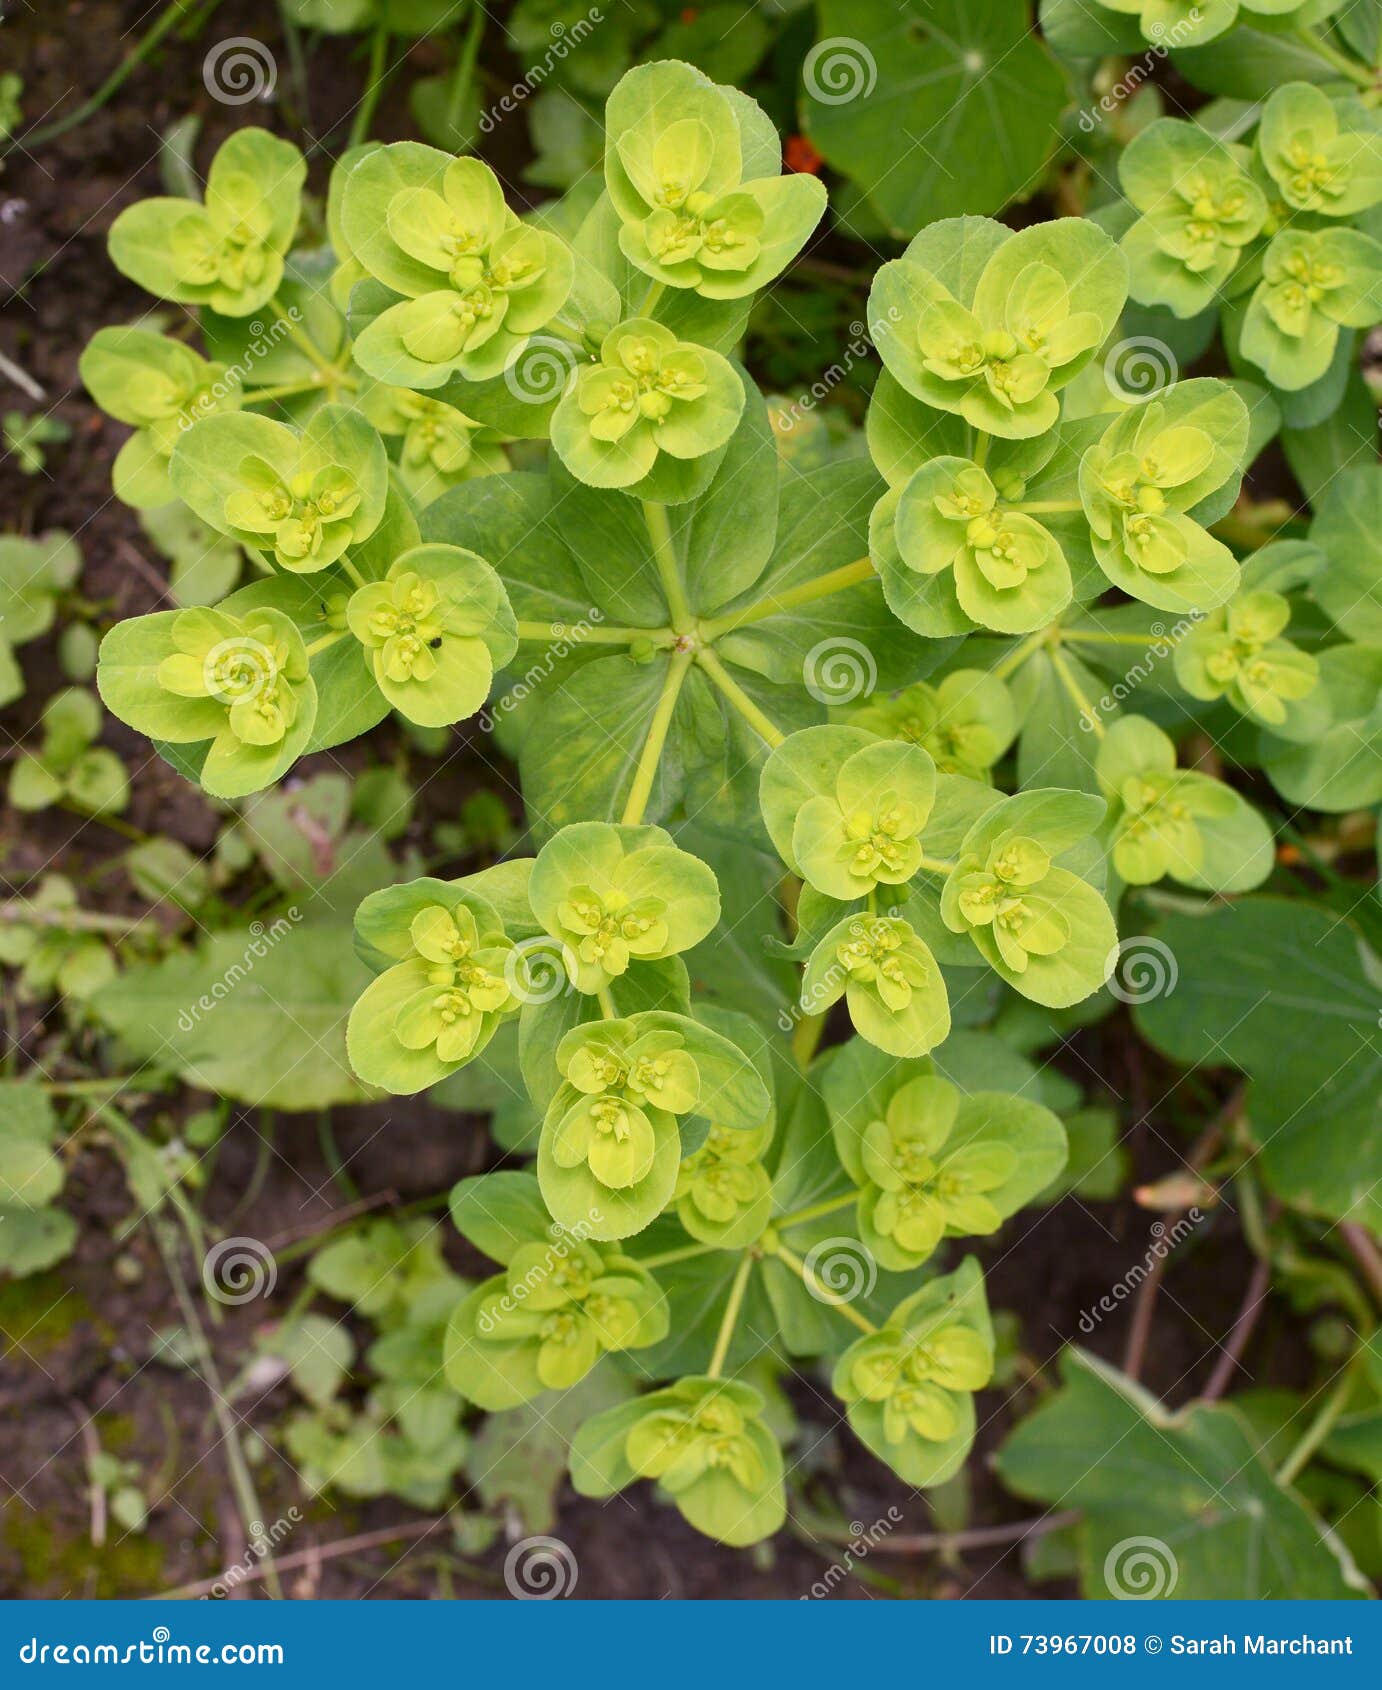 El helioscopia del euforbio - una planta del spurge, también conocida como leche de Sun Spurge, del Milkweed del paraguas, de Wart Spurge y de la loca - crece como mala hierba anual en una cama de flor